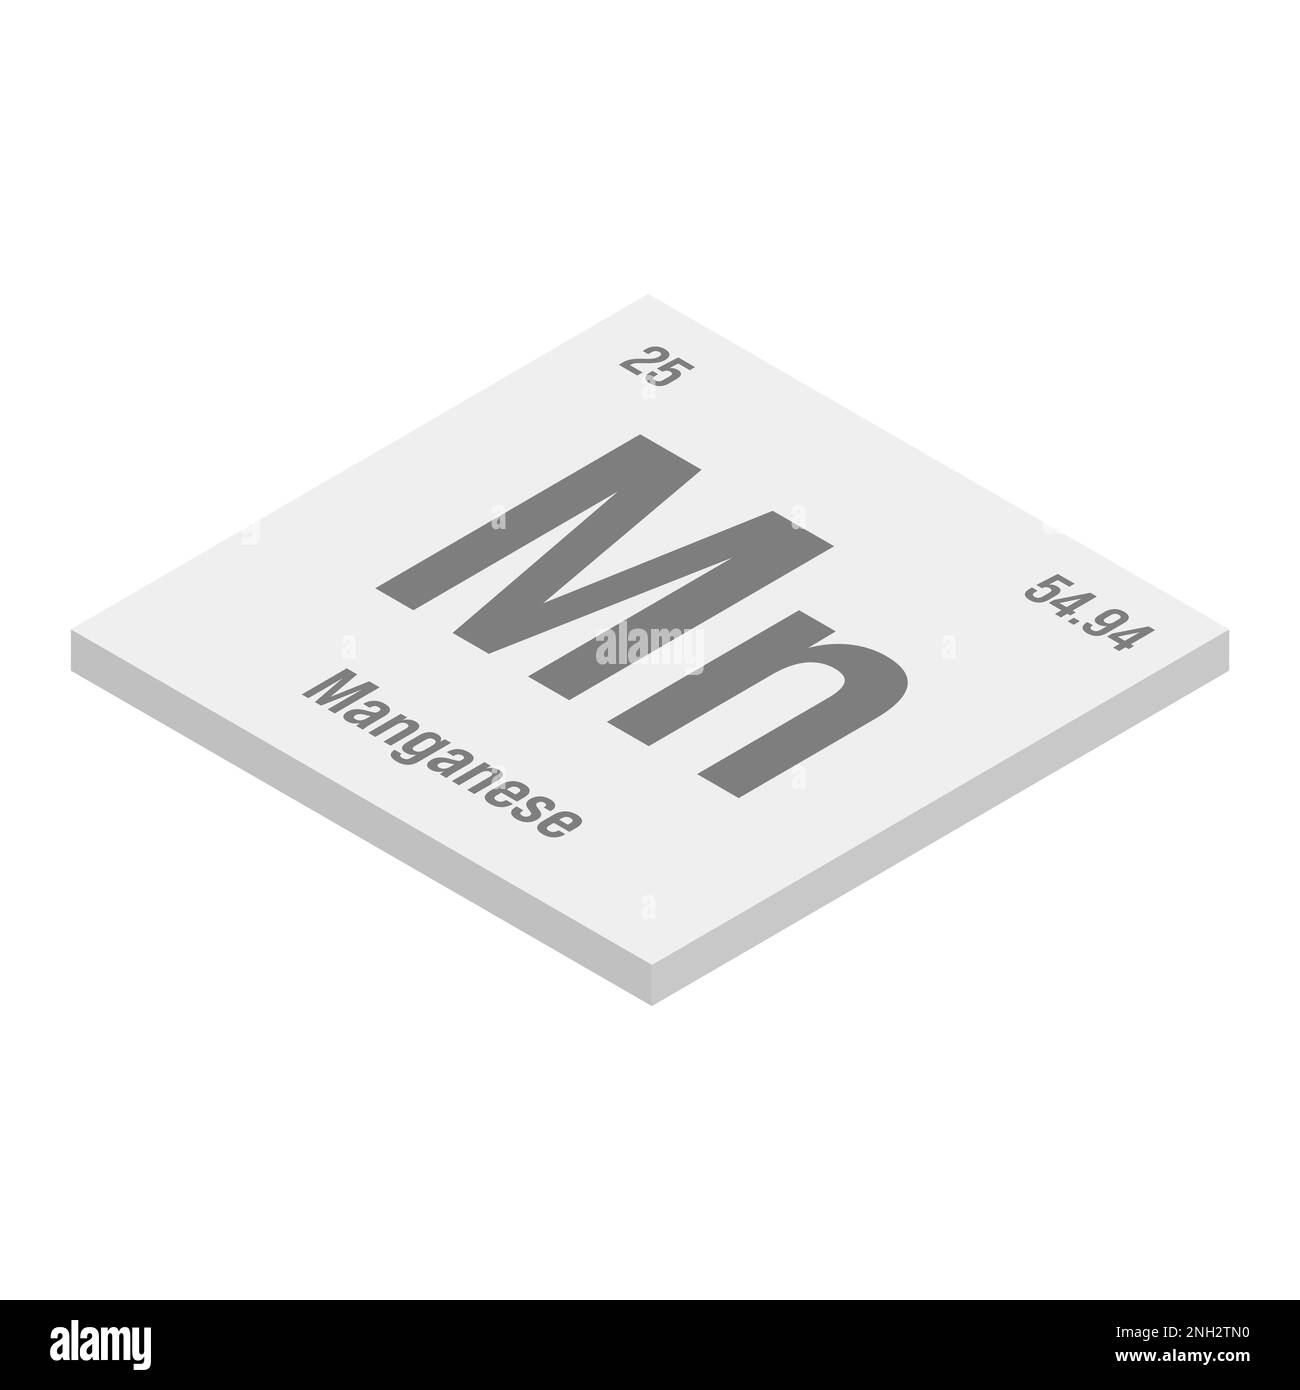 Manganese, Mn, grigio 3D immagine isometrica dell'elemento periodico della tabella con nome, simbolo, numero atomico e peso. Metallo di transizione con vari usi industriali, come nella produzione di acciaio, batterie, e come catalizzatore in determinate reazioni chimiche. Illustrazione Vettoriale